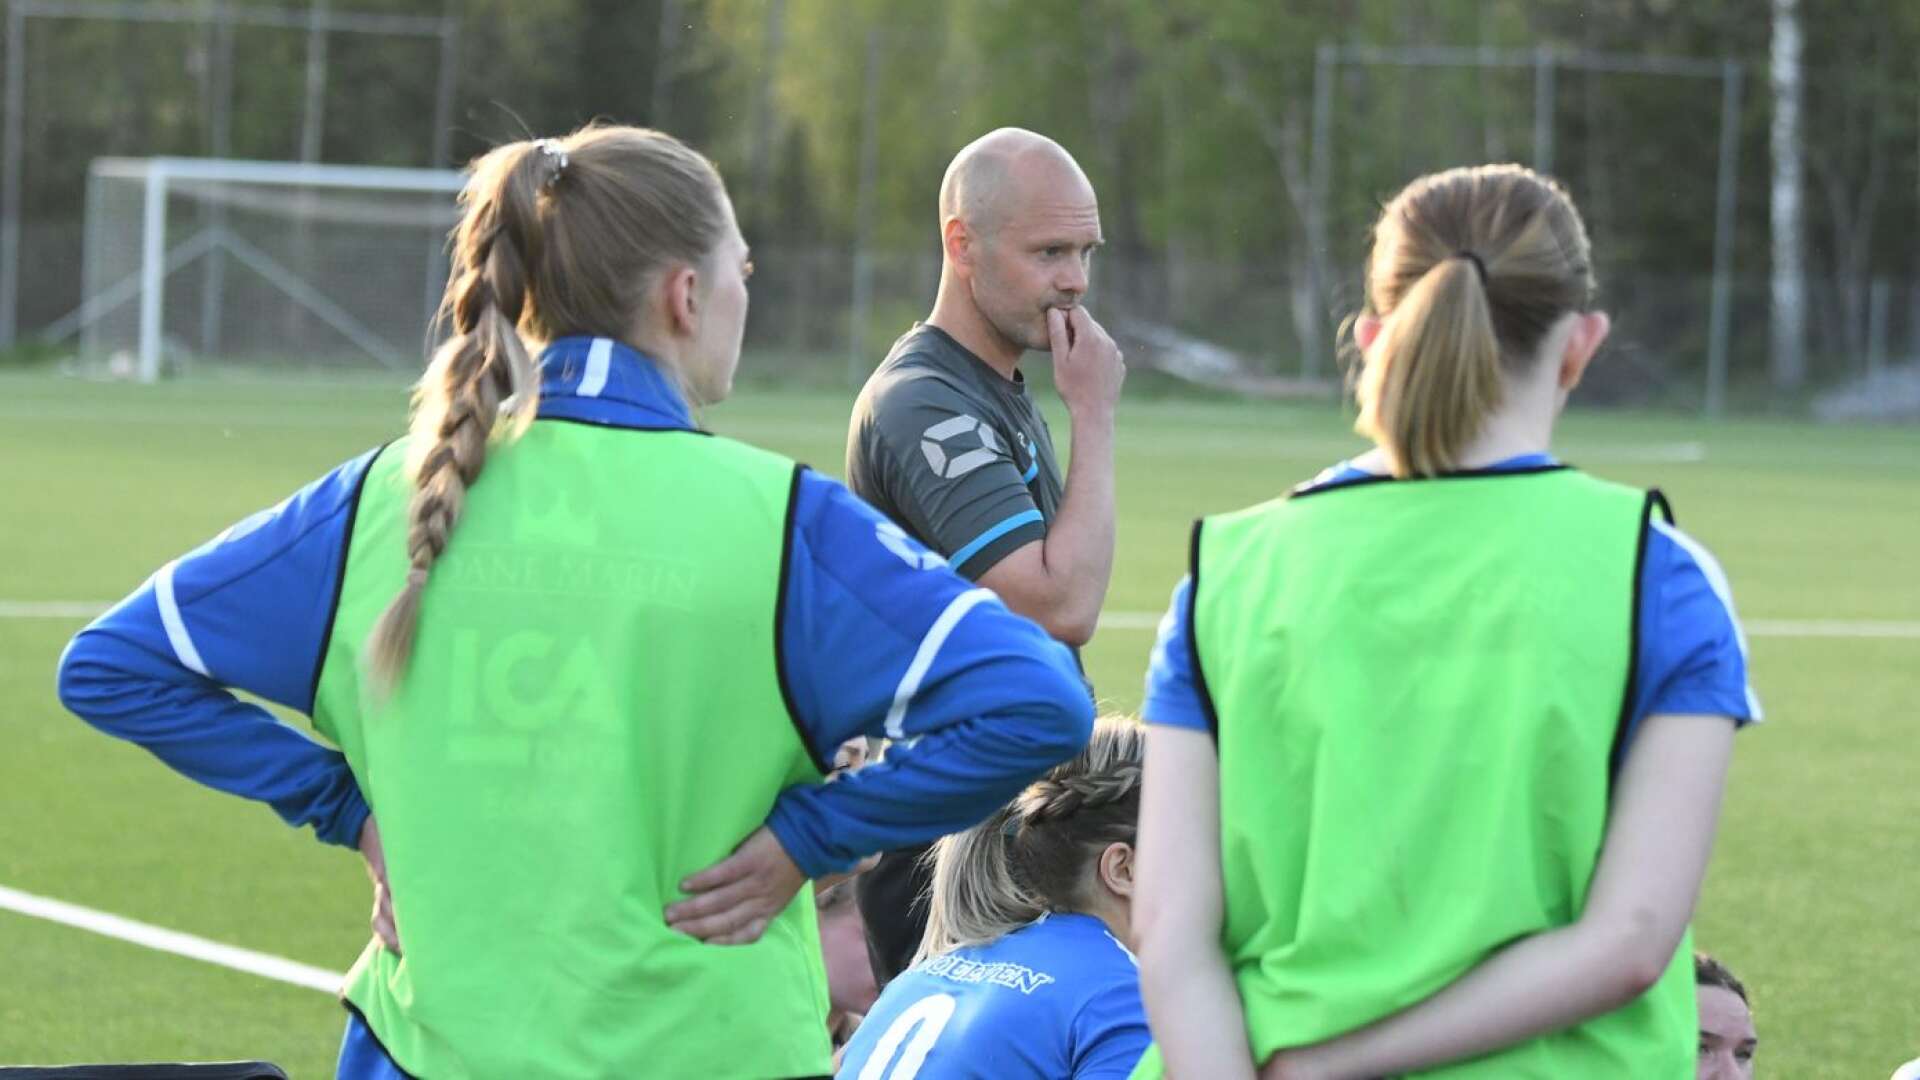 Kronan-tränaren Calle Forsberg konstaterade att serietvåan Karlstad Fotboll på bortaplan till slut blev övermäktigt.